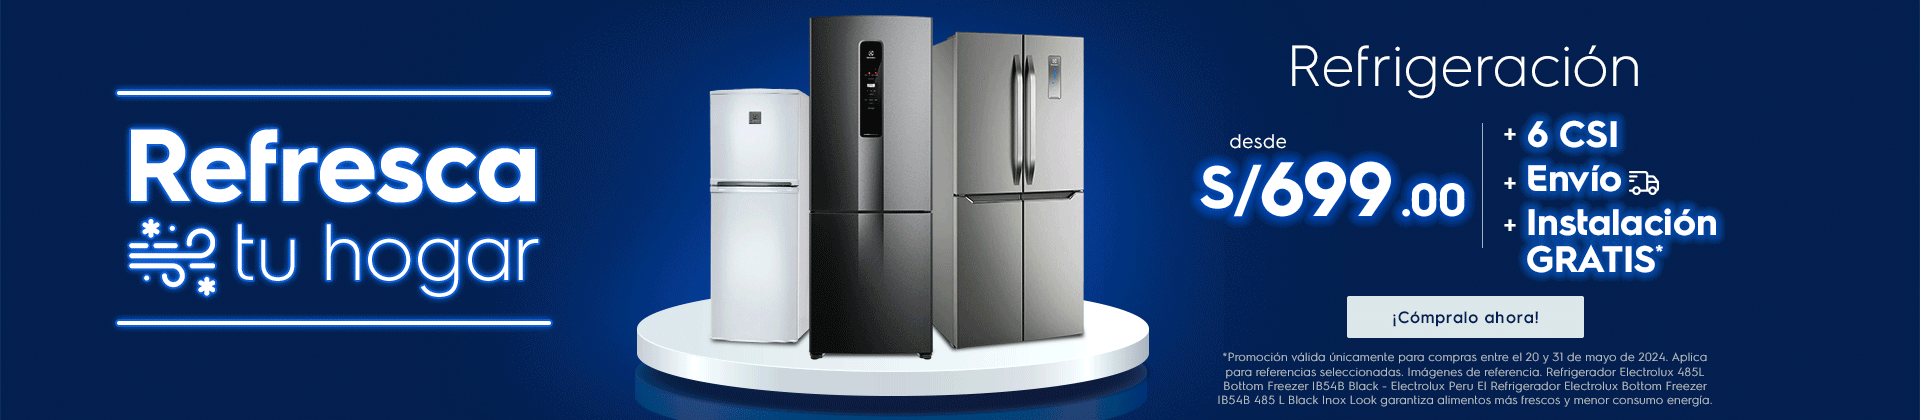 Refresca tu hogar - refrigeración desde S/699.00